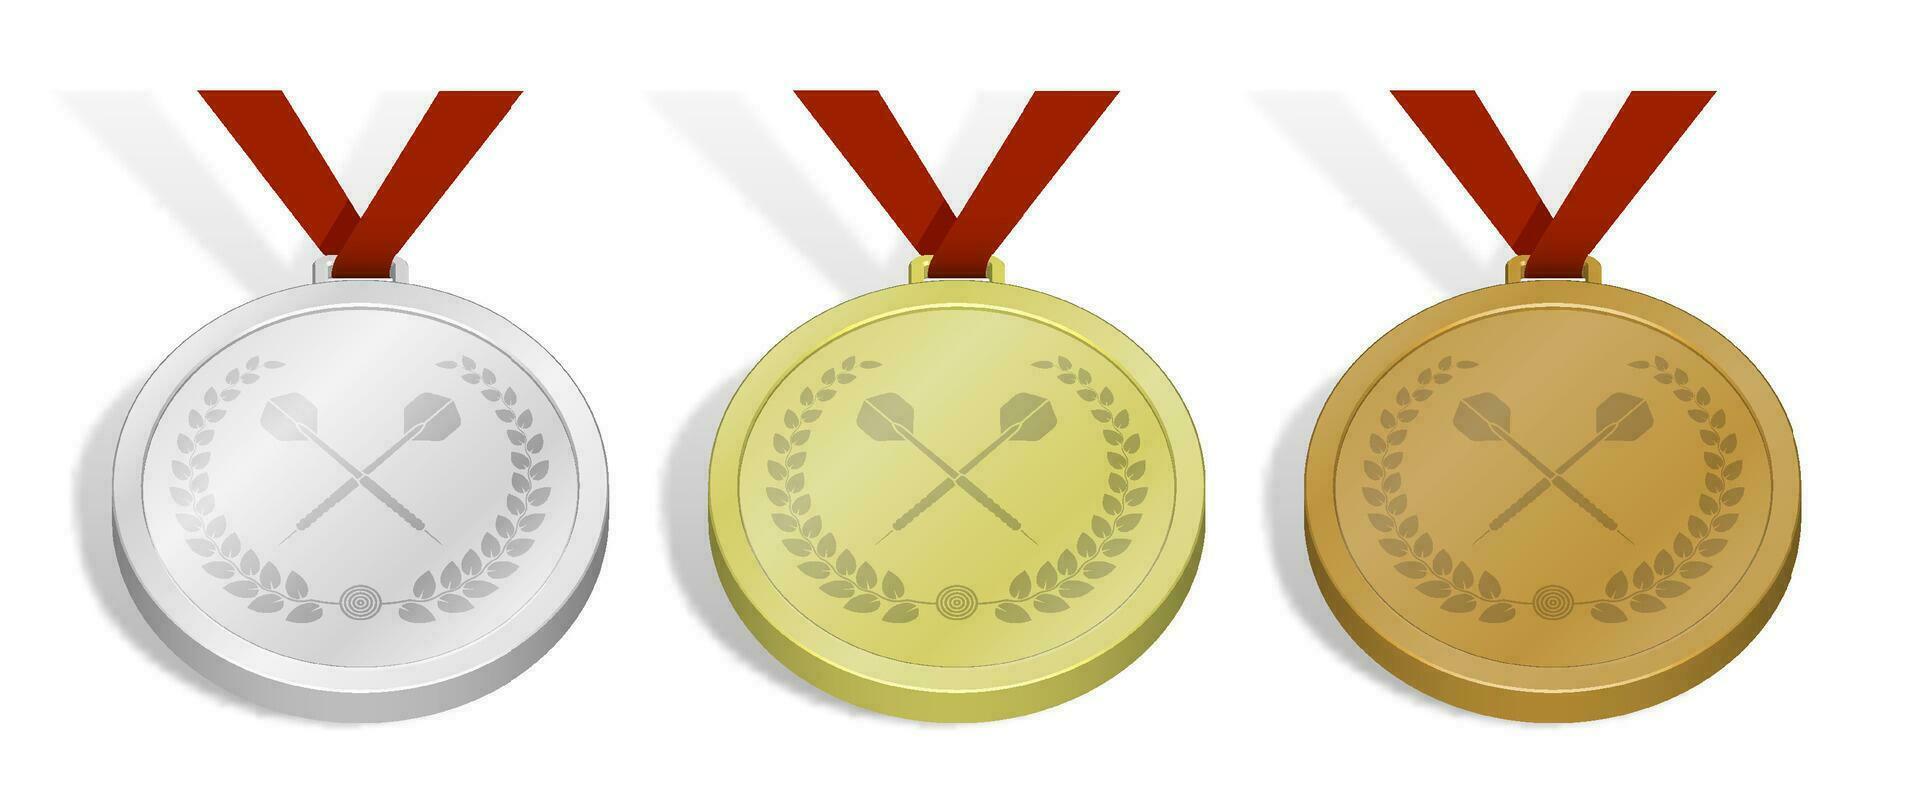 conjunto de deporte medallas con emblema de cruzado Deportes dardo flecha con laurel guirnalda para dardos competencia. oro, plata y bronce premio con azul cinta. 3d vector